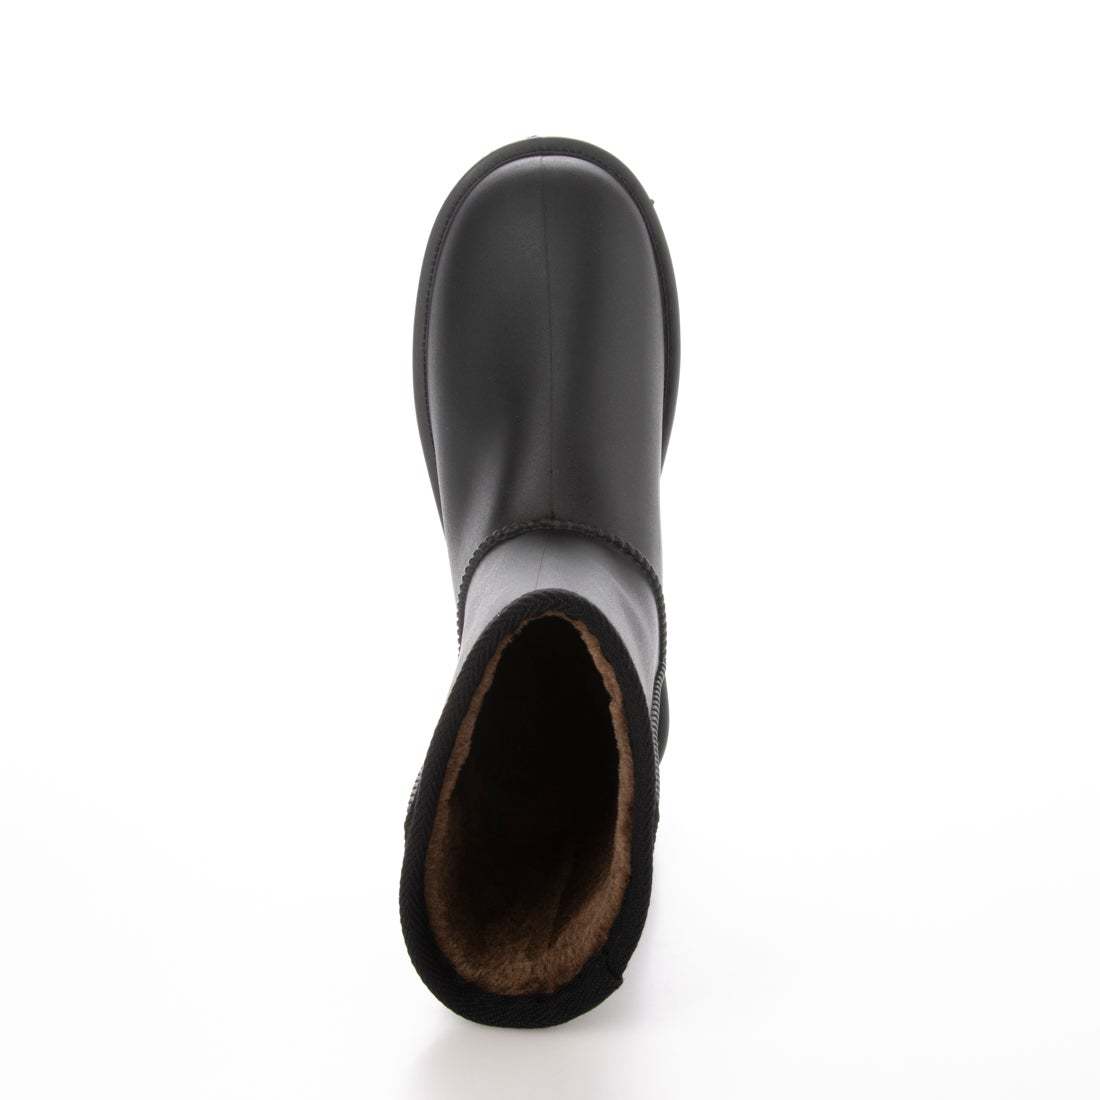 防寒ブーツ　ムートンブーツ　防寒防水ブーツ　新品『21076-BLK-235』23.5cm　メンズ、レディース、キッズのファミリーサイズ